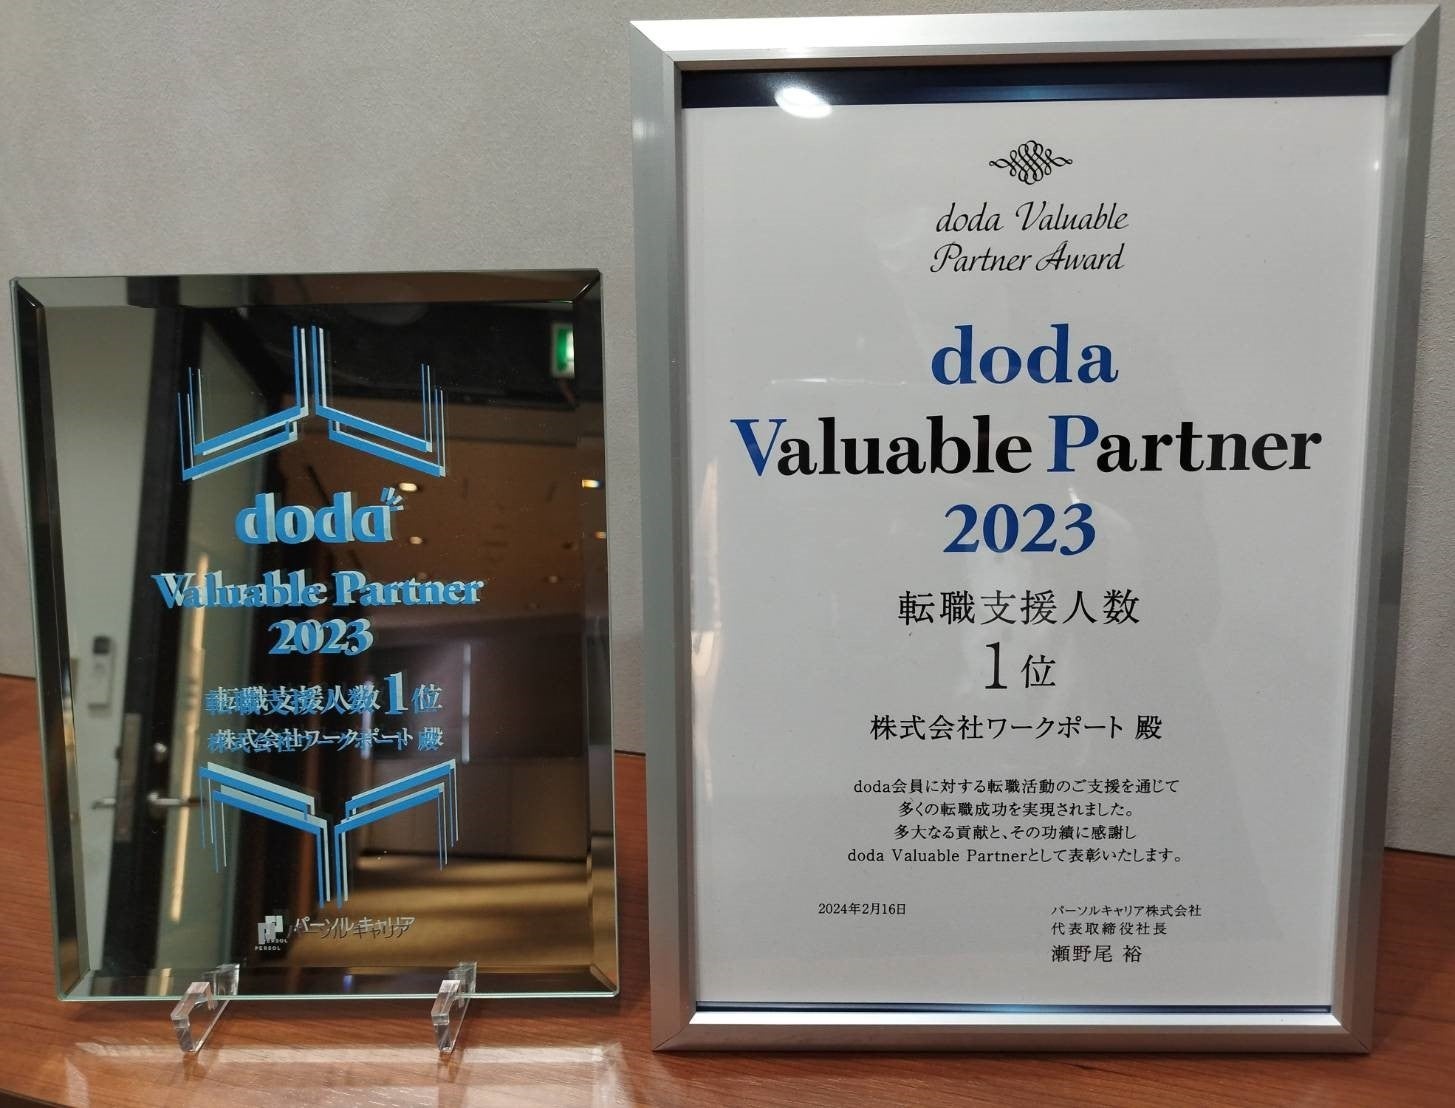 パーソルキャリア主催「doda Valuable Partner Award 2023」にて「転職支援人数部門1位」を受賞